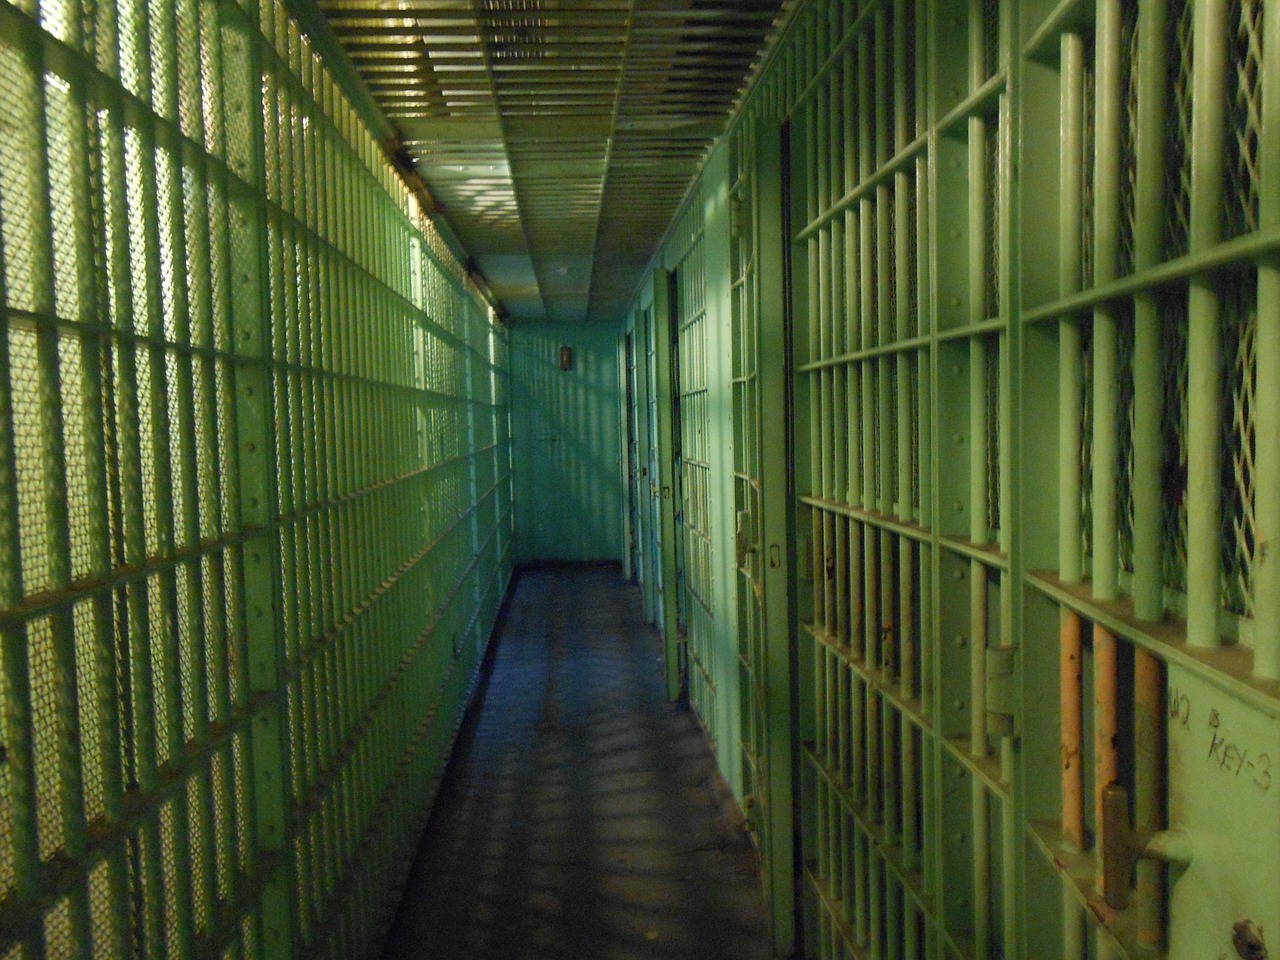 Αμβούργο: Απόδραση κακοποιού από τις φυλακές κατά τη διάρκεια οικογενειακής επίσκεψης